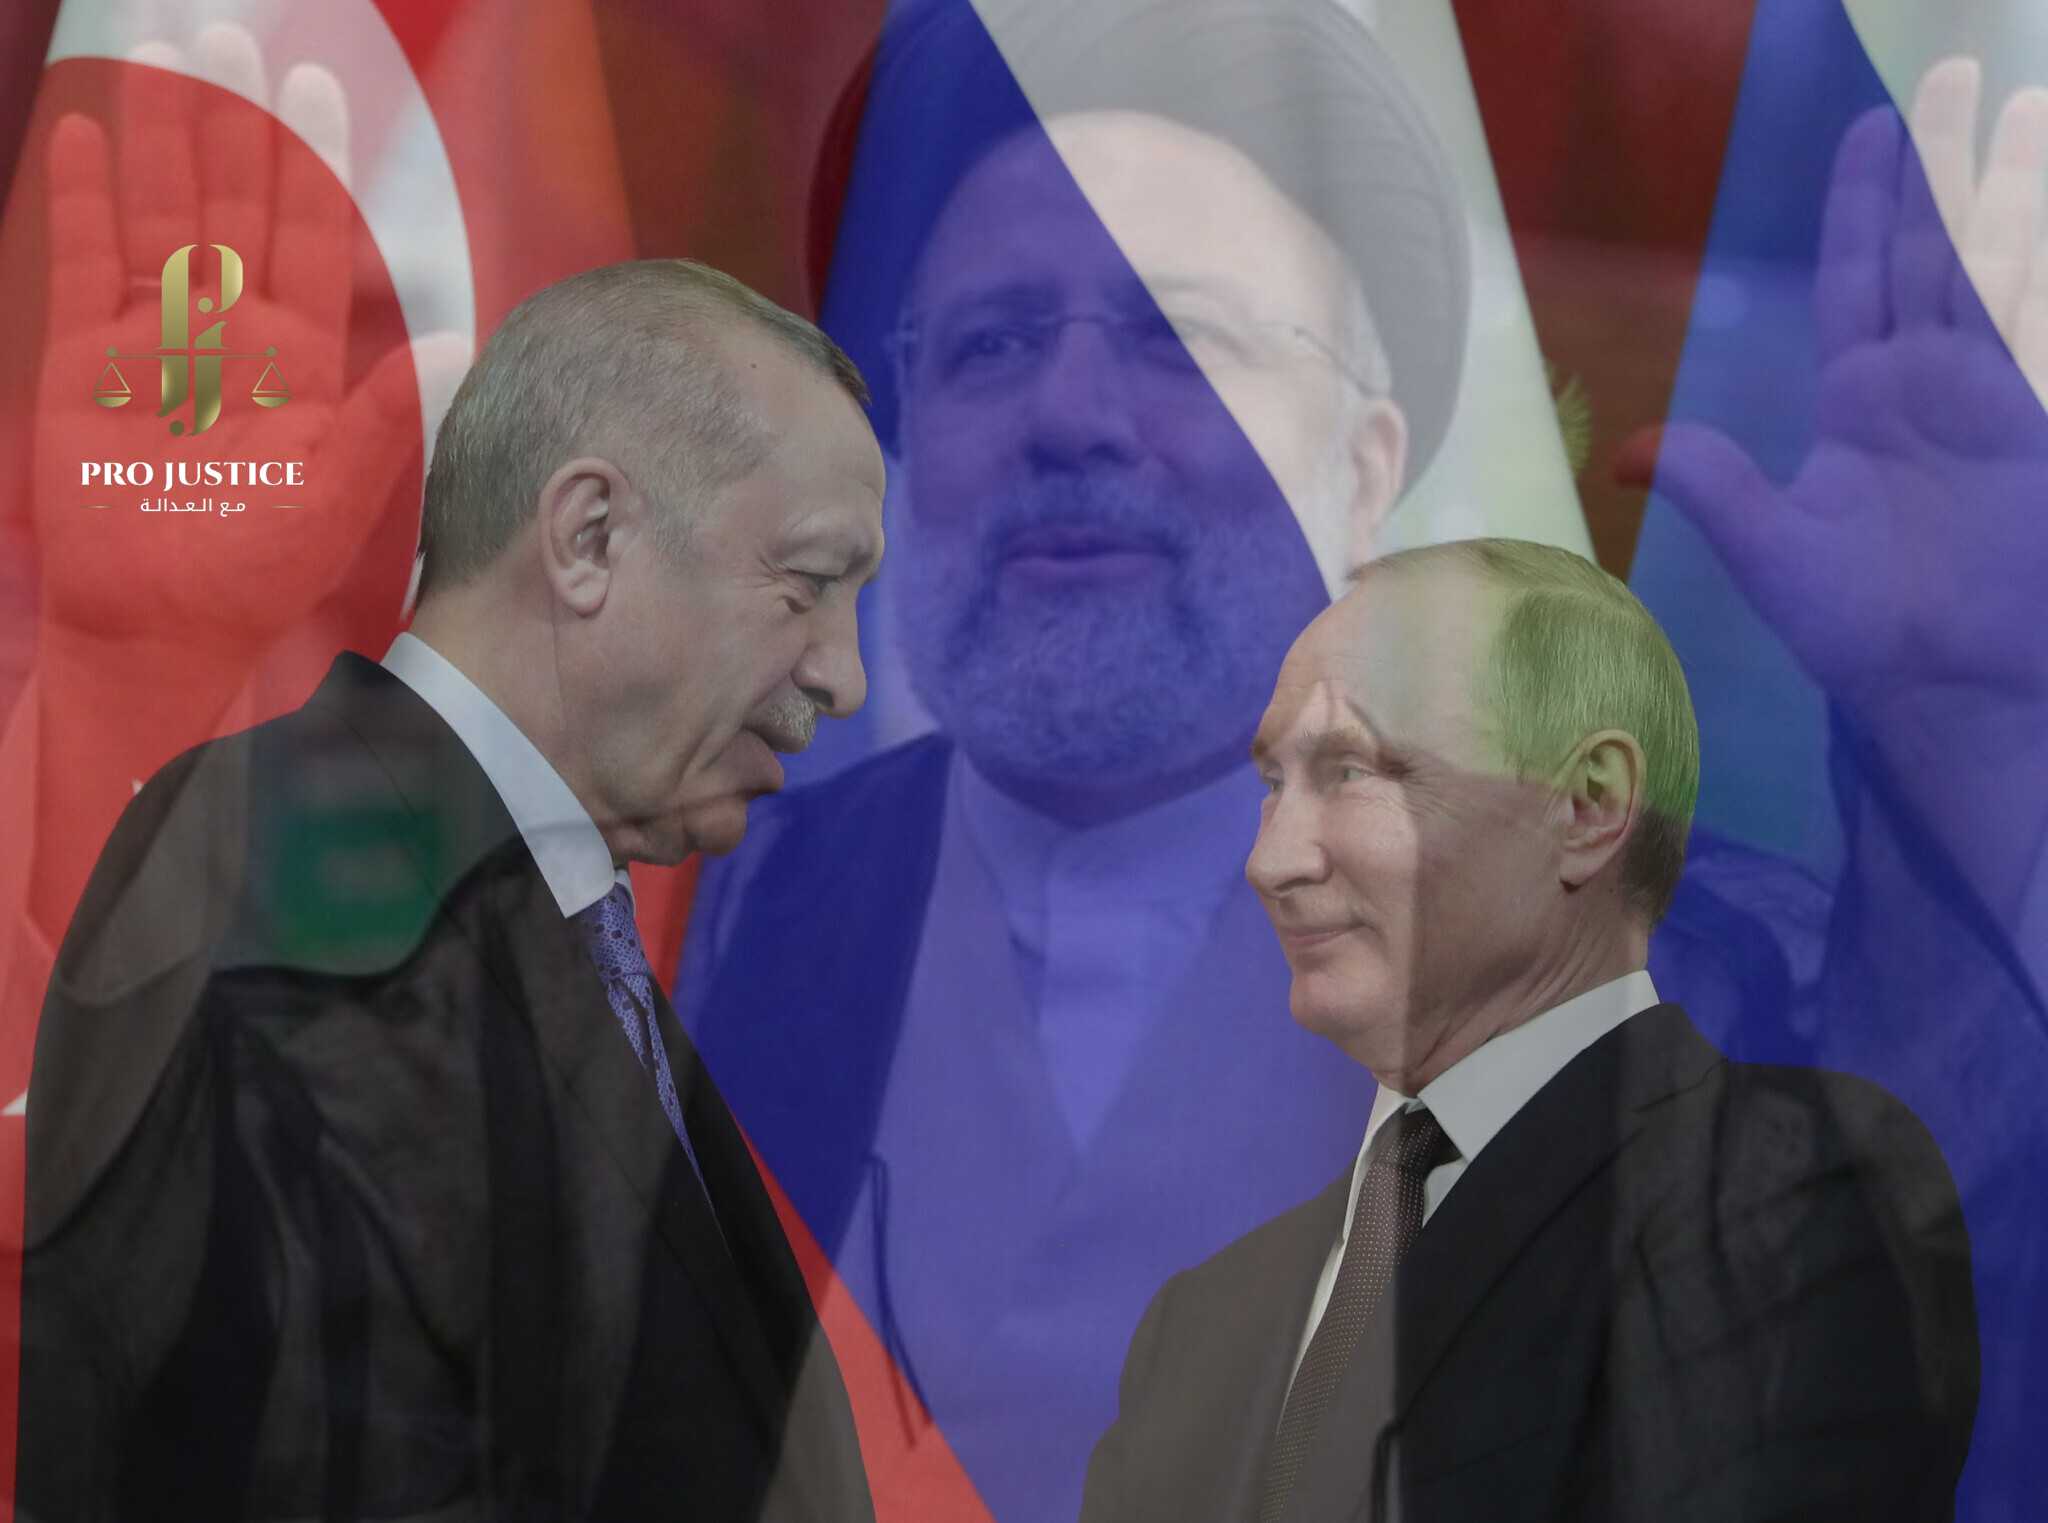 “بوتين وأردوغان” في طهران الثلاثاء المقبل لمناقشة الوضع في سوريا